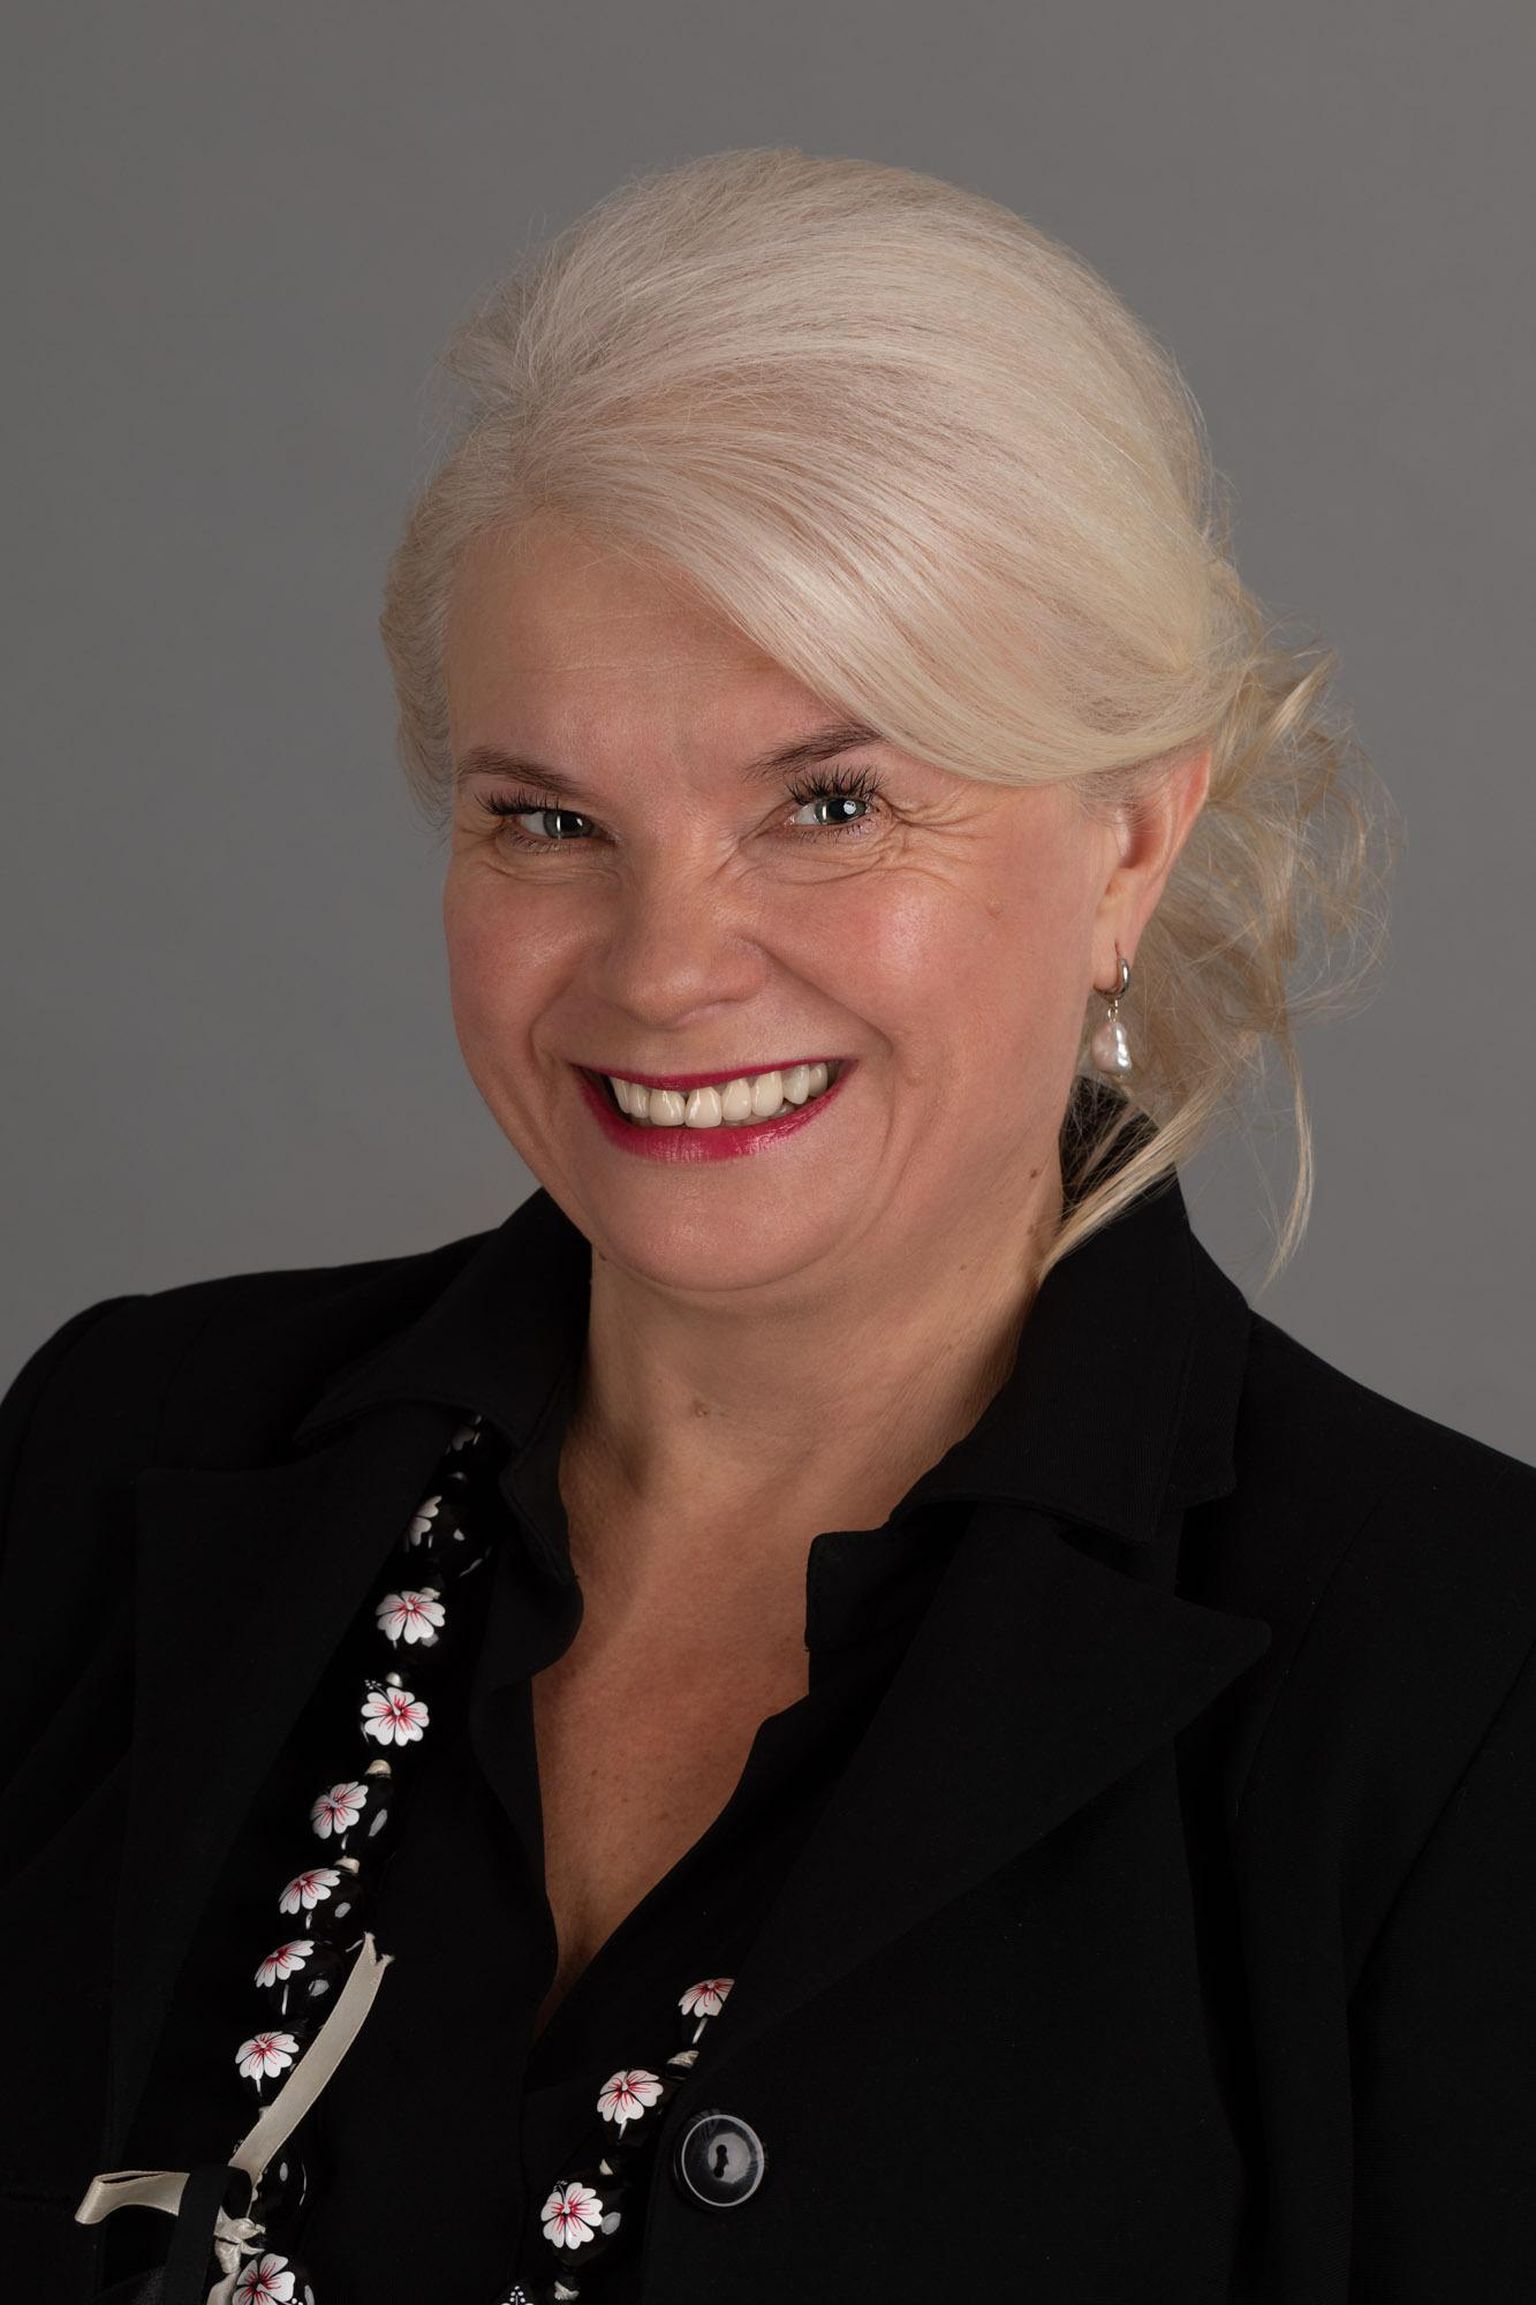 Anne Roosipõld, Tartu Ülikooli Pärnu kolledži turismiteenuste kaasprofessor ja turismiosakonna juhataja.